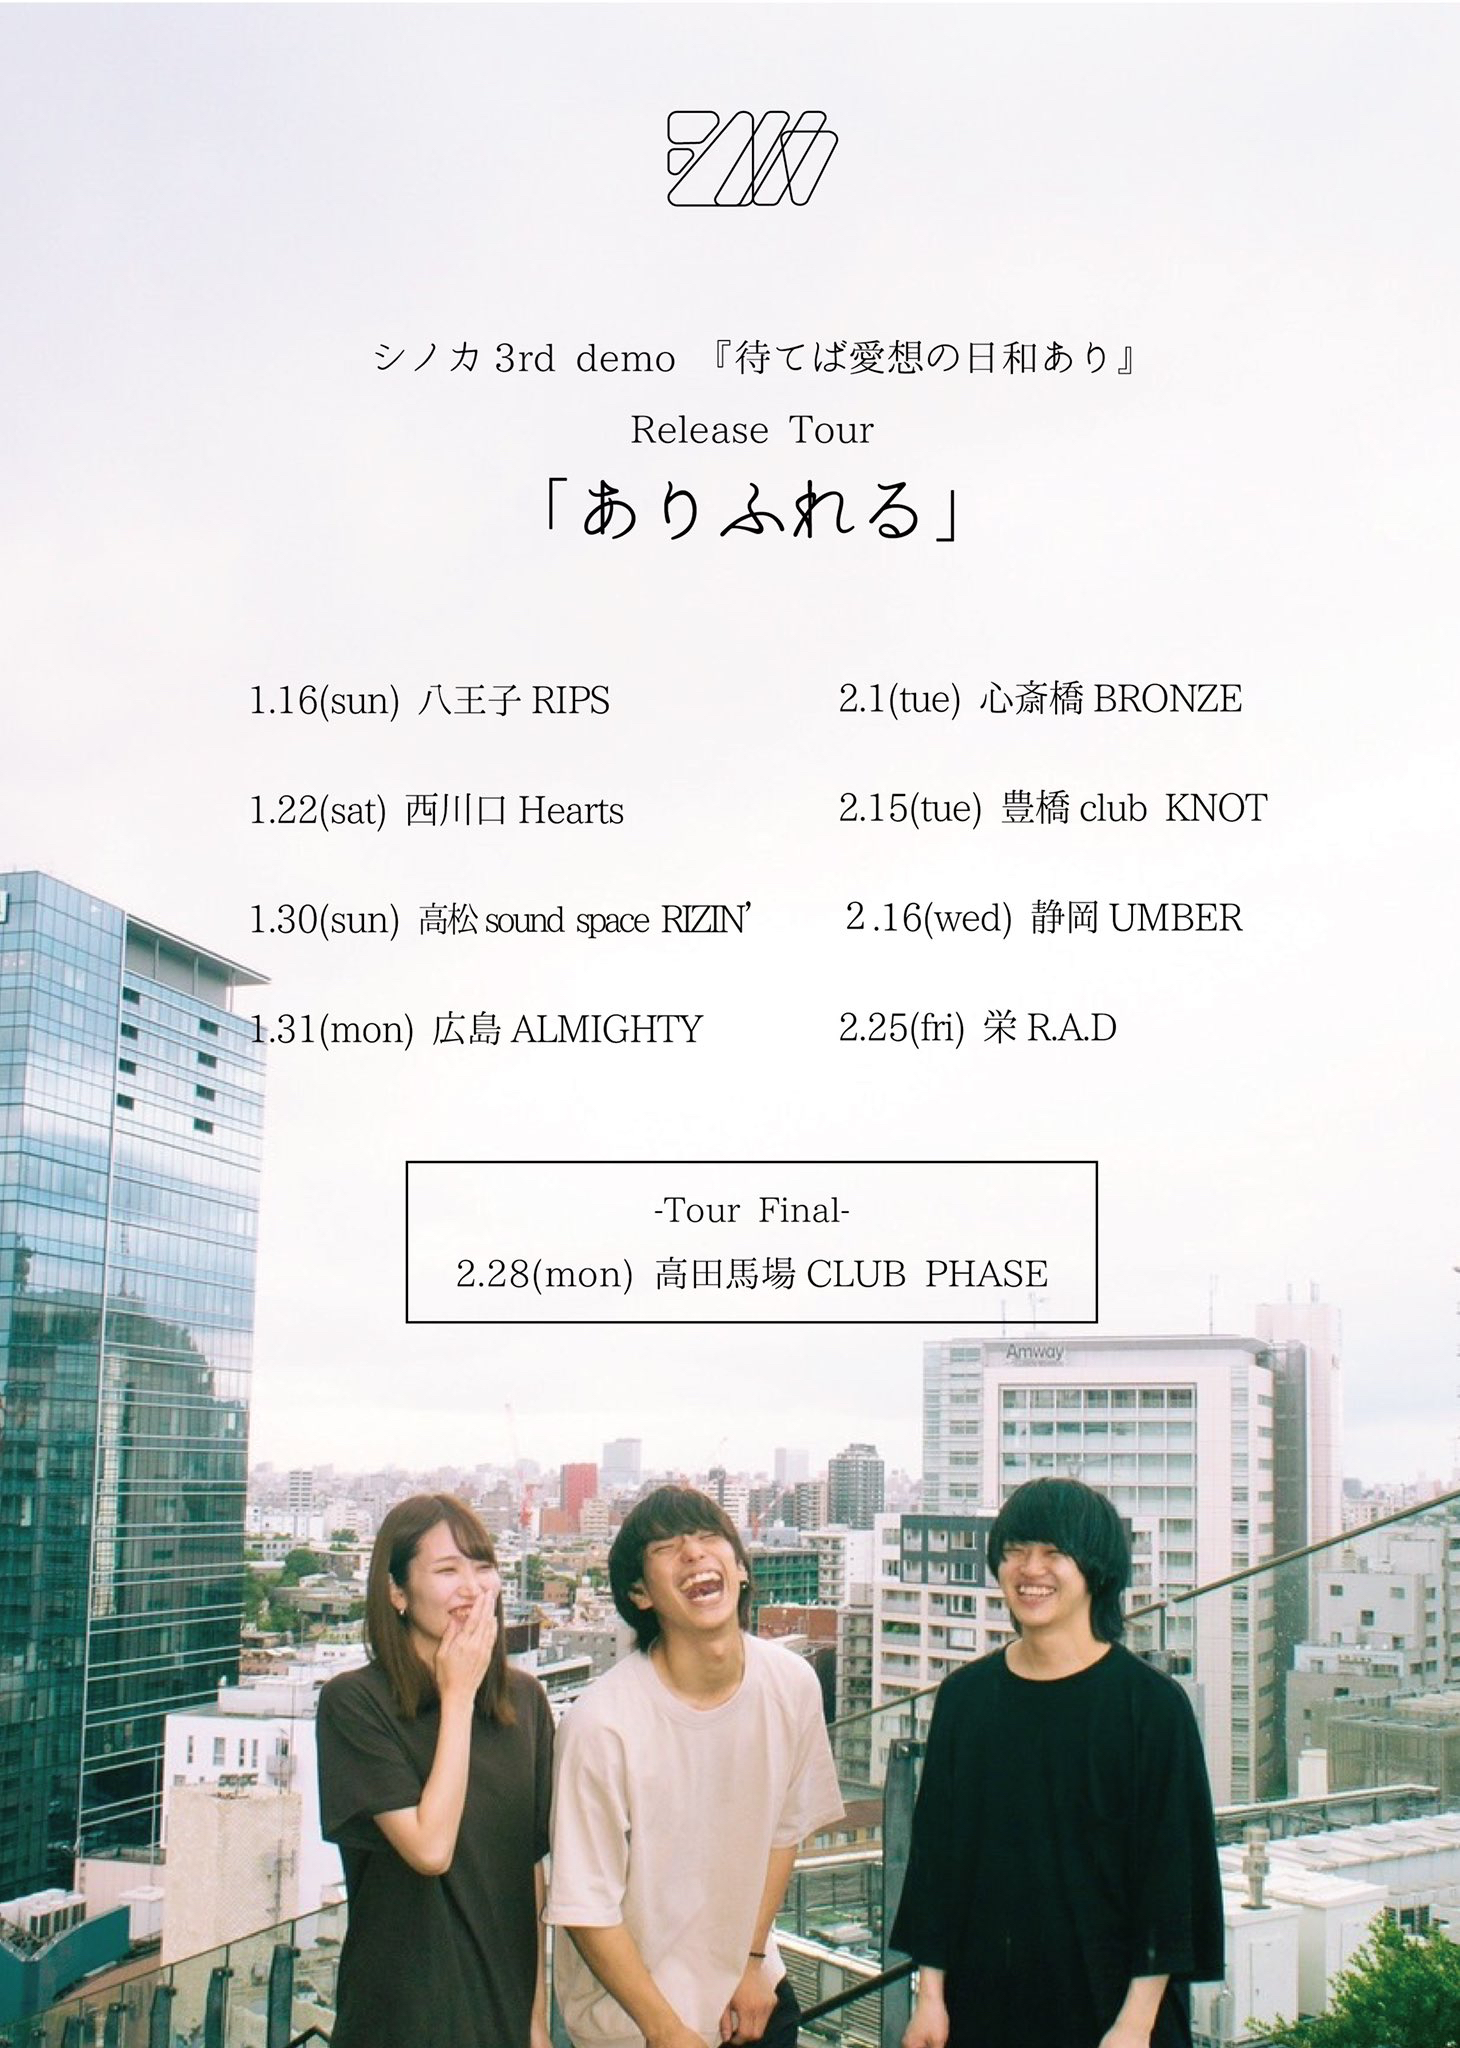 シノカ3rd demo『待てば愛想の日和あり』 Release Tour「ありふれる」